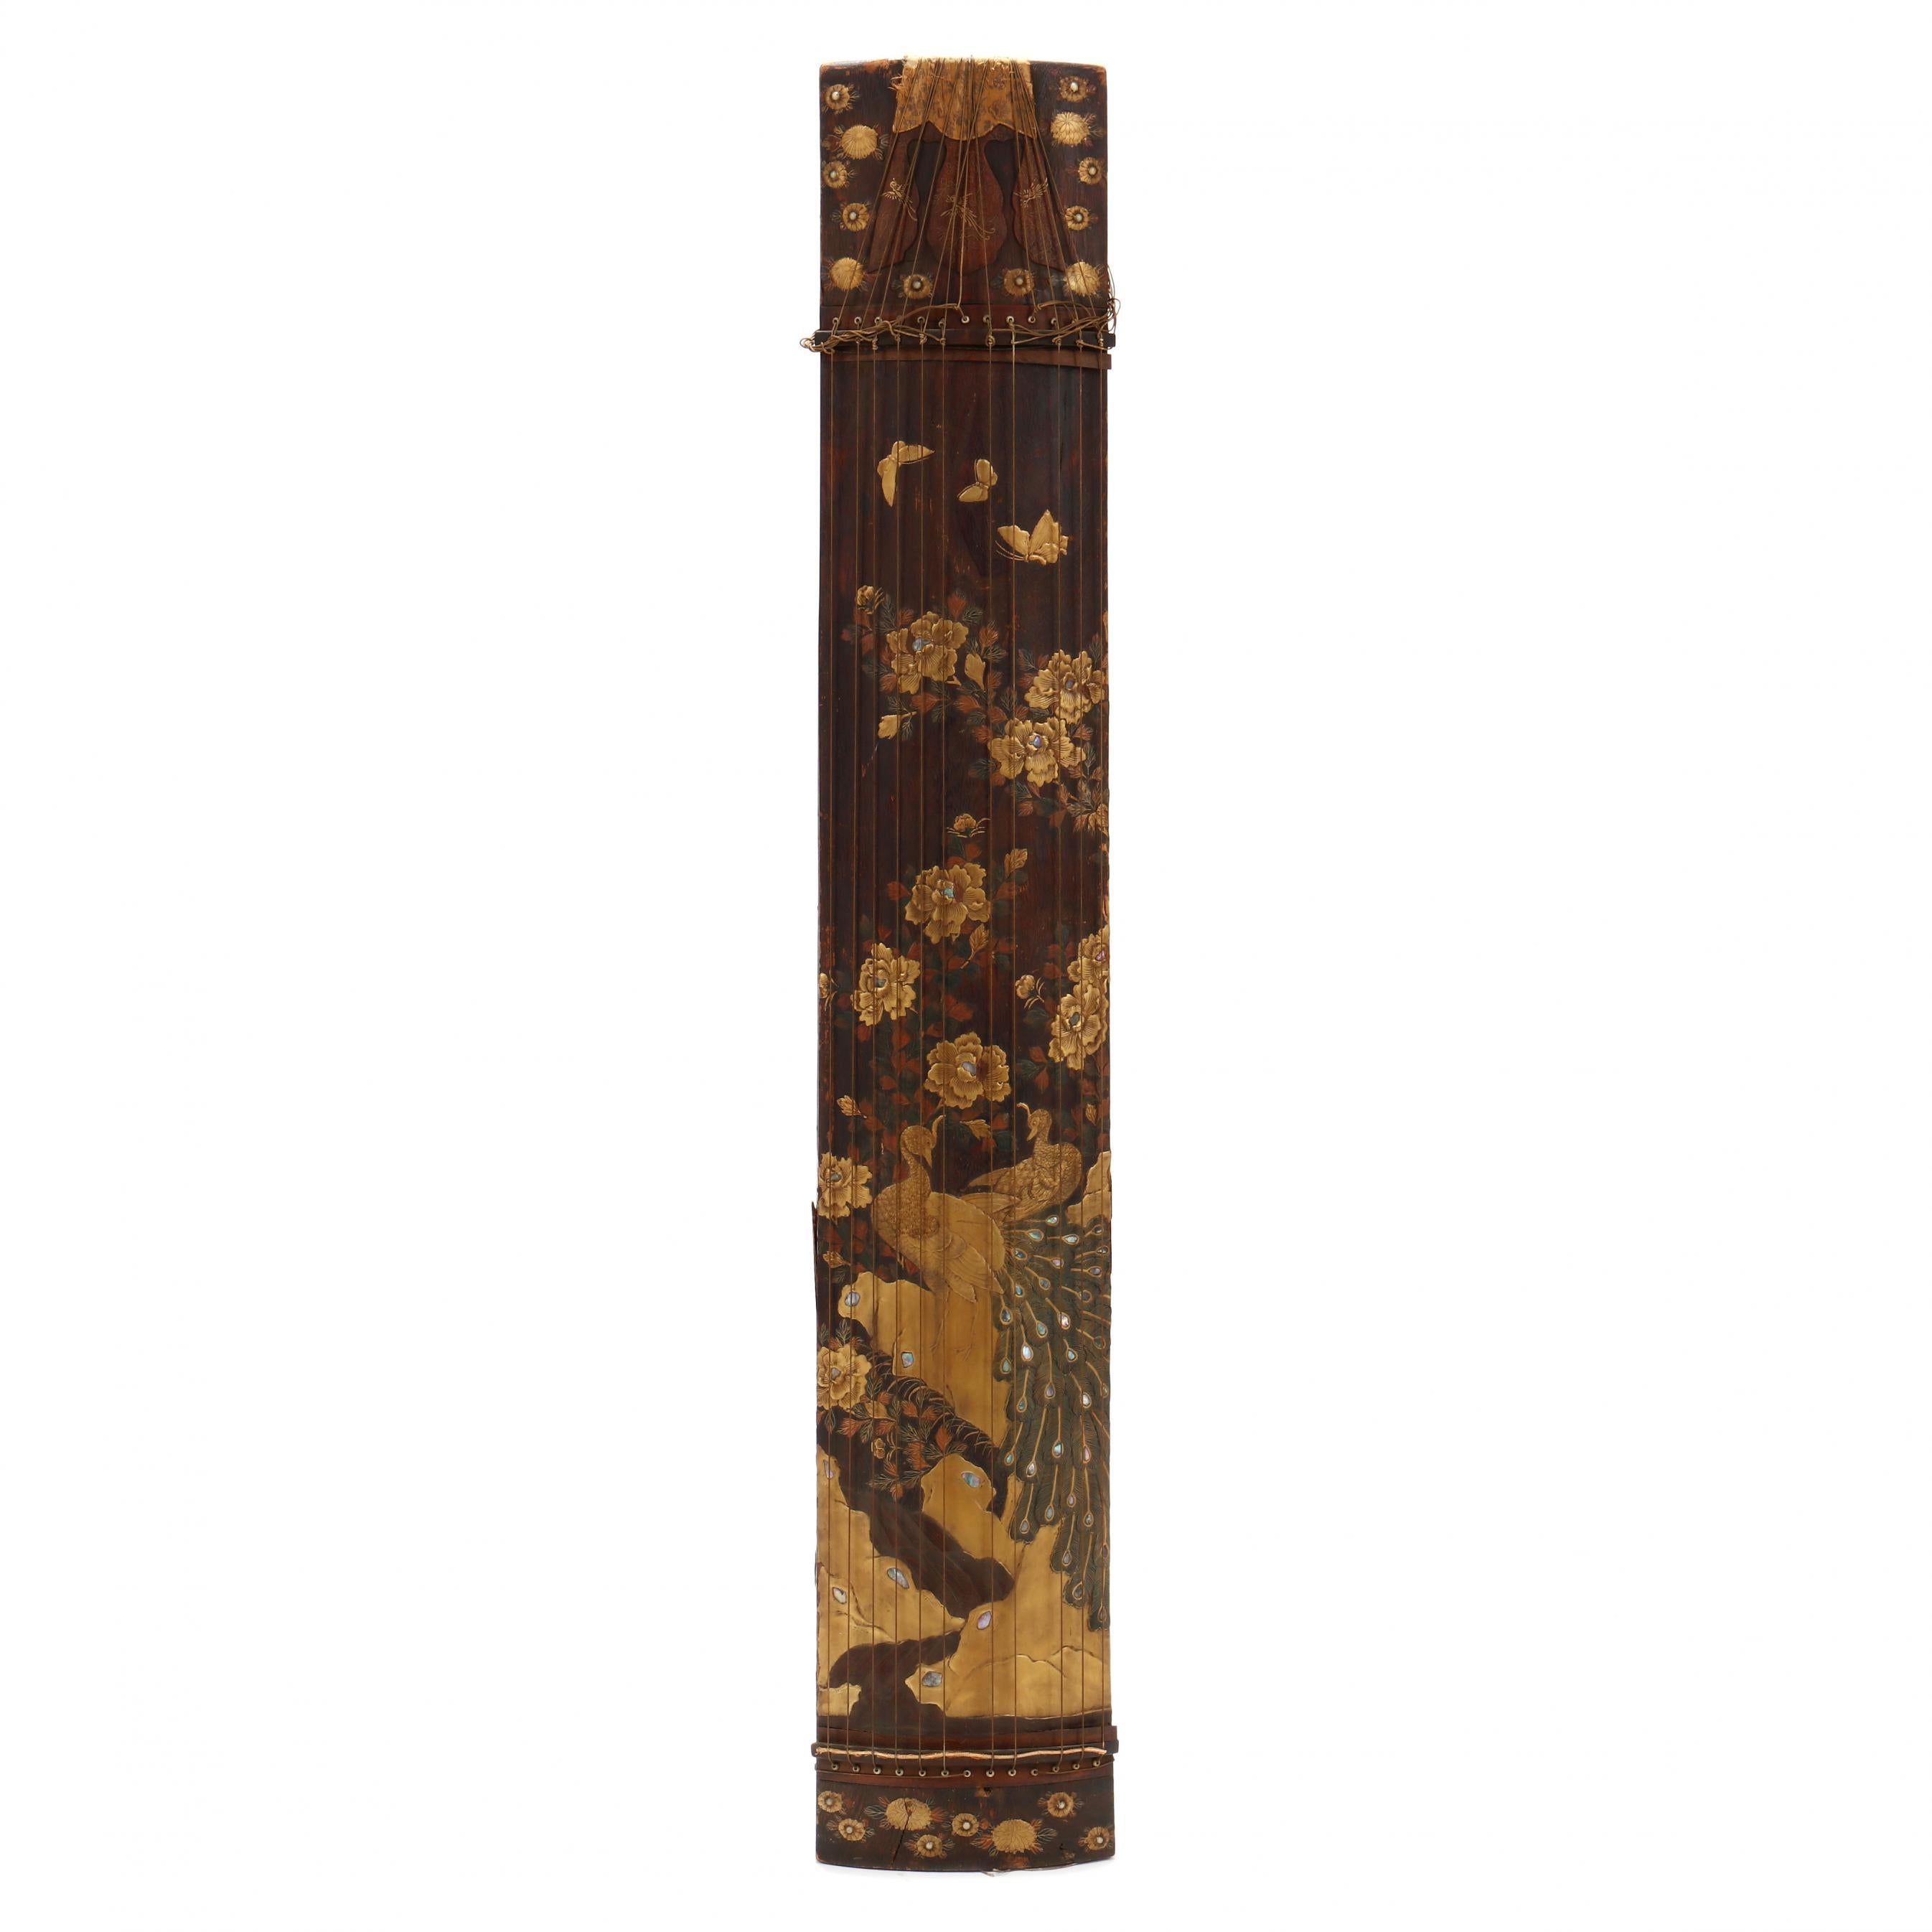 Eine seltene japanische Koto aus geschnitztem Paulownia-Holz, reich verziert mit Maki-e-Lack, aus dem späten 19. Jahrhundert der Meiji-Zeit (1868-1912). Die Fassade des Saiteninstruments ist mit wunderschönen goldenen Takamaki-e- und